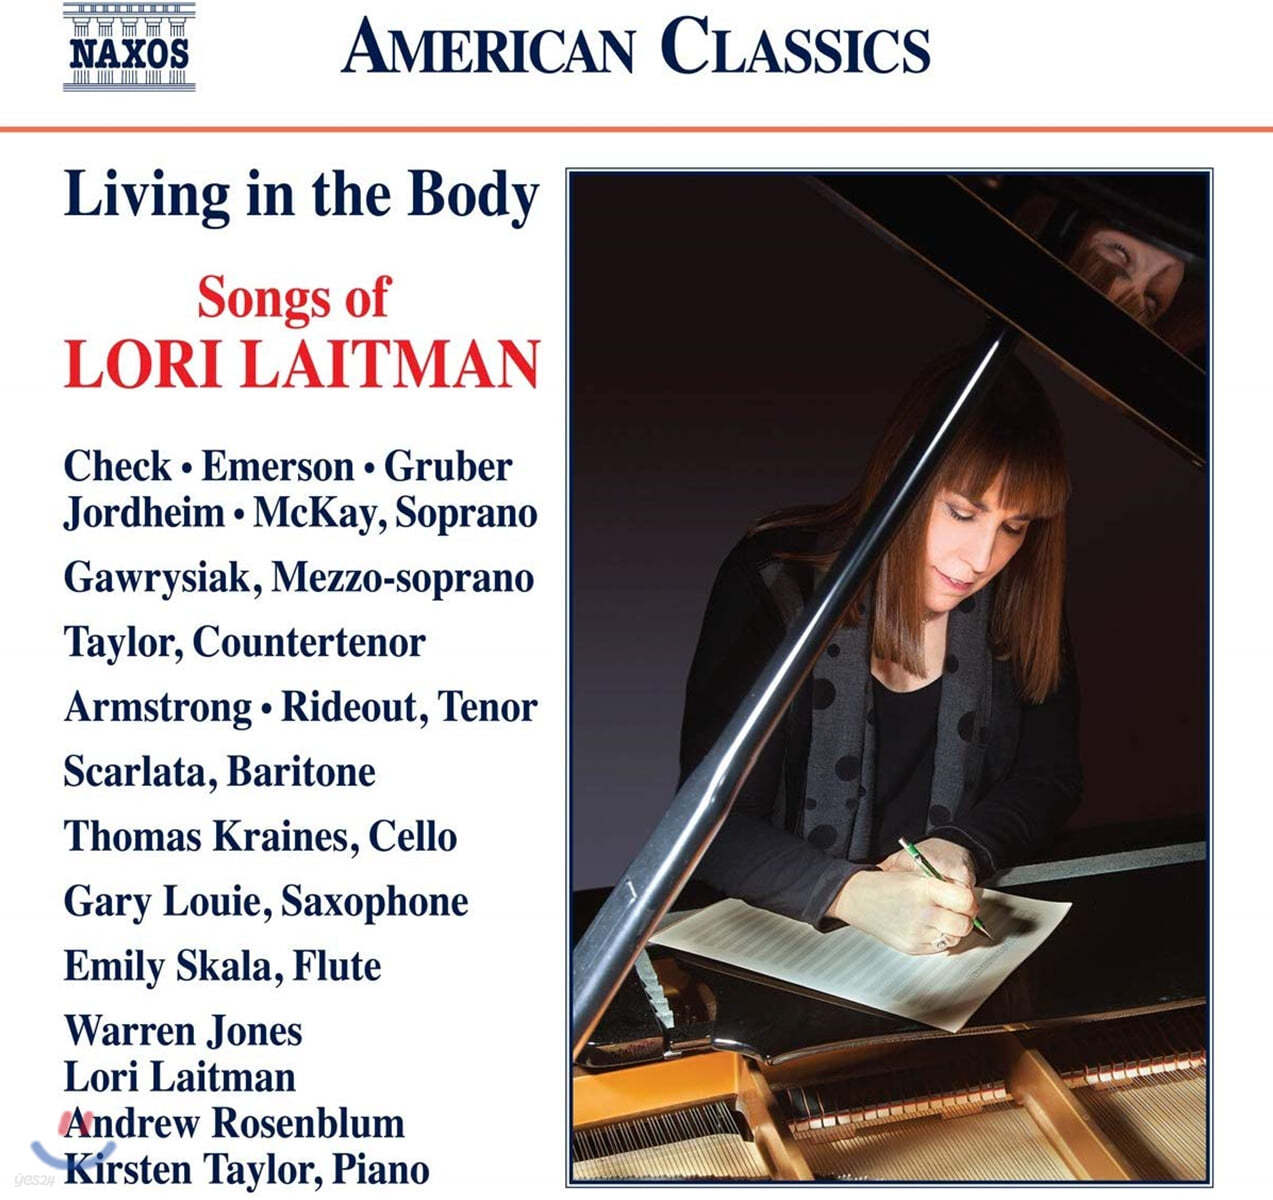 로리 레이트먼: 가곡집 (Living in the Body - Songs of Lori Laitman)